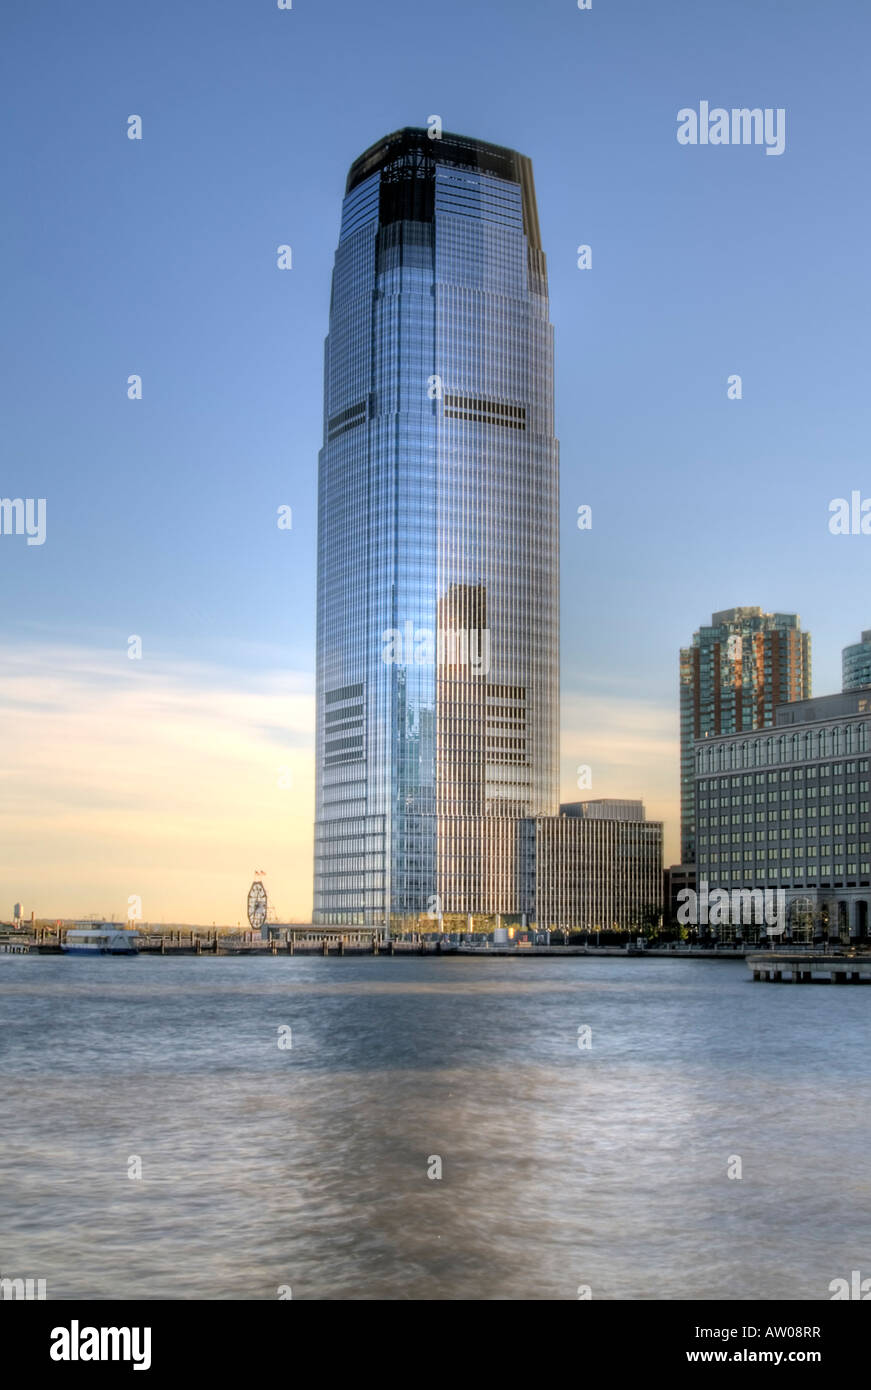 El edificio más alto en la costa de Jersey City, NJ. famoso reloj Colgate  junto a ella. NJ, EE.UU Fotografía de stock - Alamy